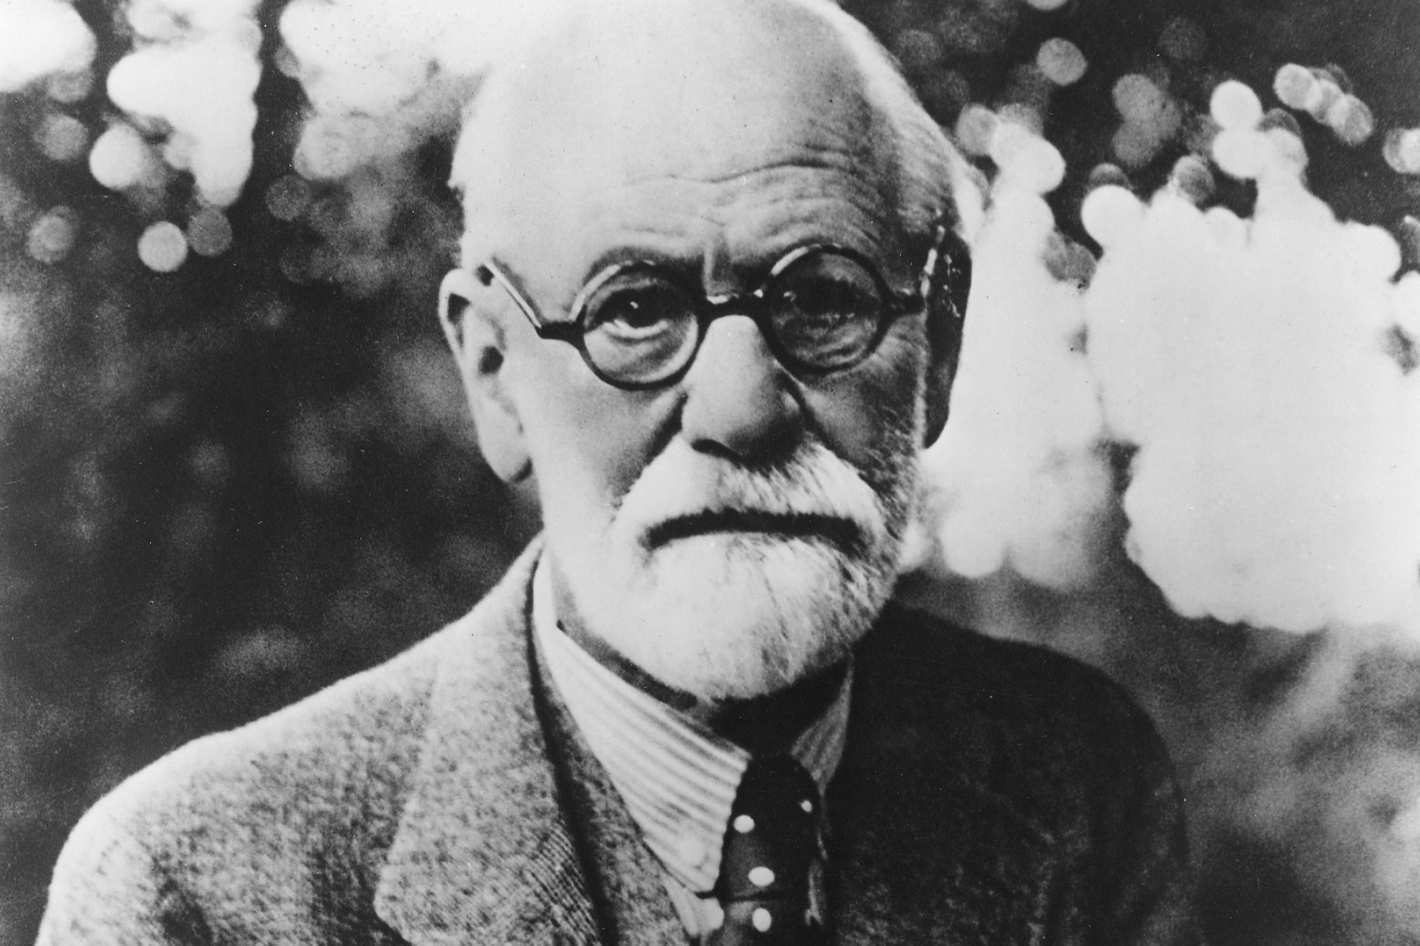 USP oferece curso sobre Sigmund Freud, médico e pesquisador austríaco que criou a psicanálise